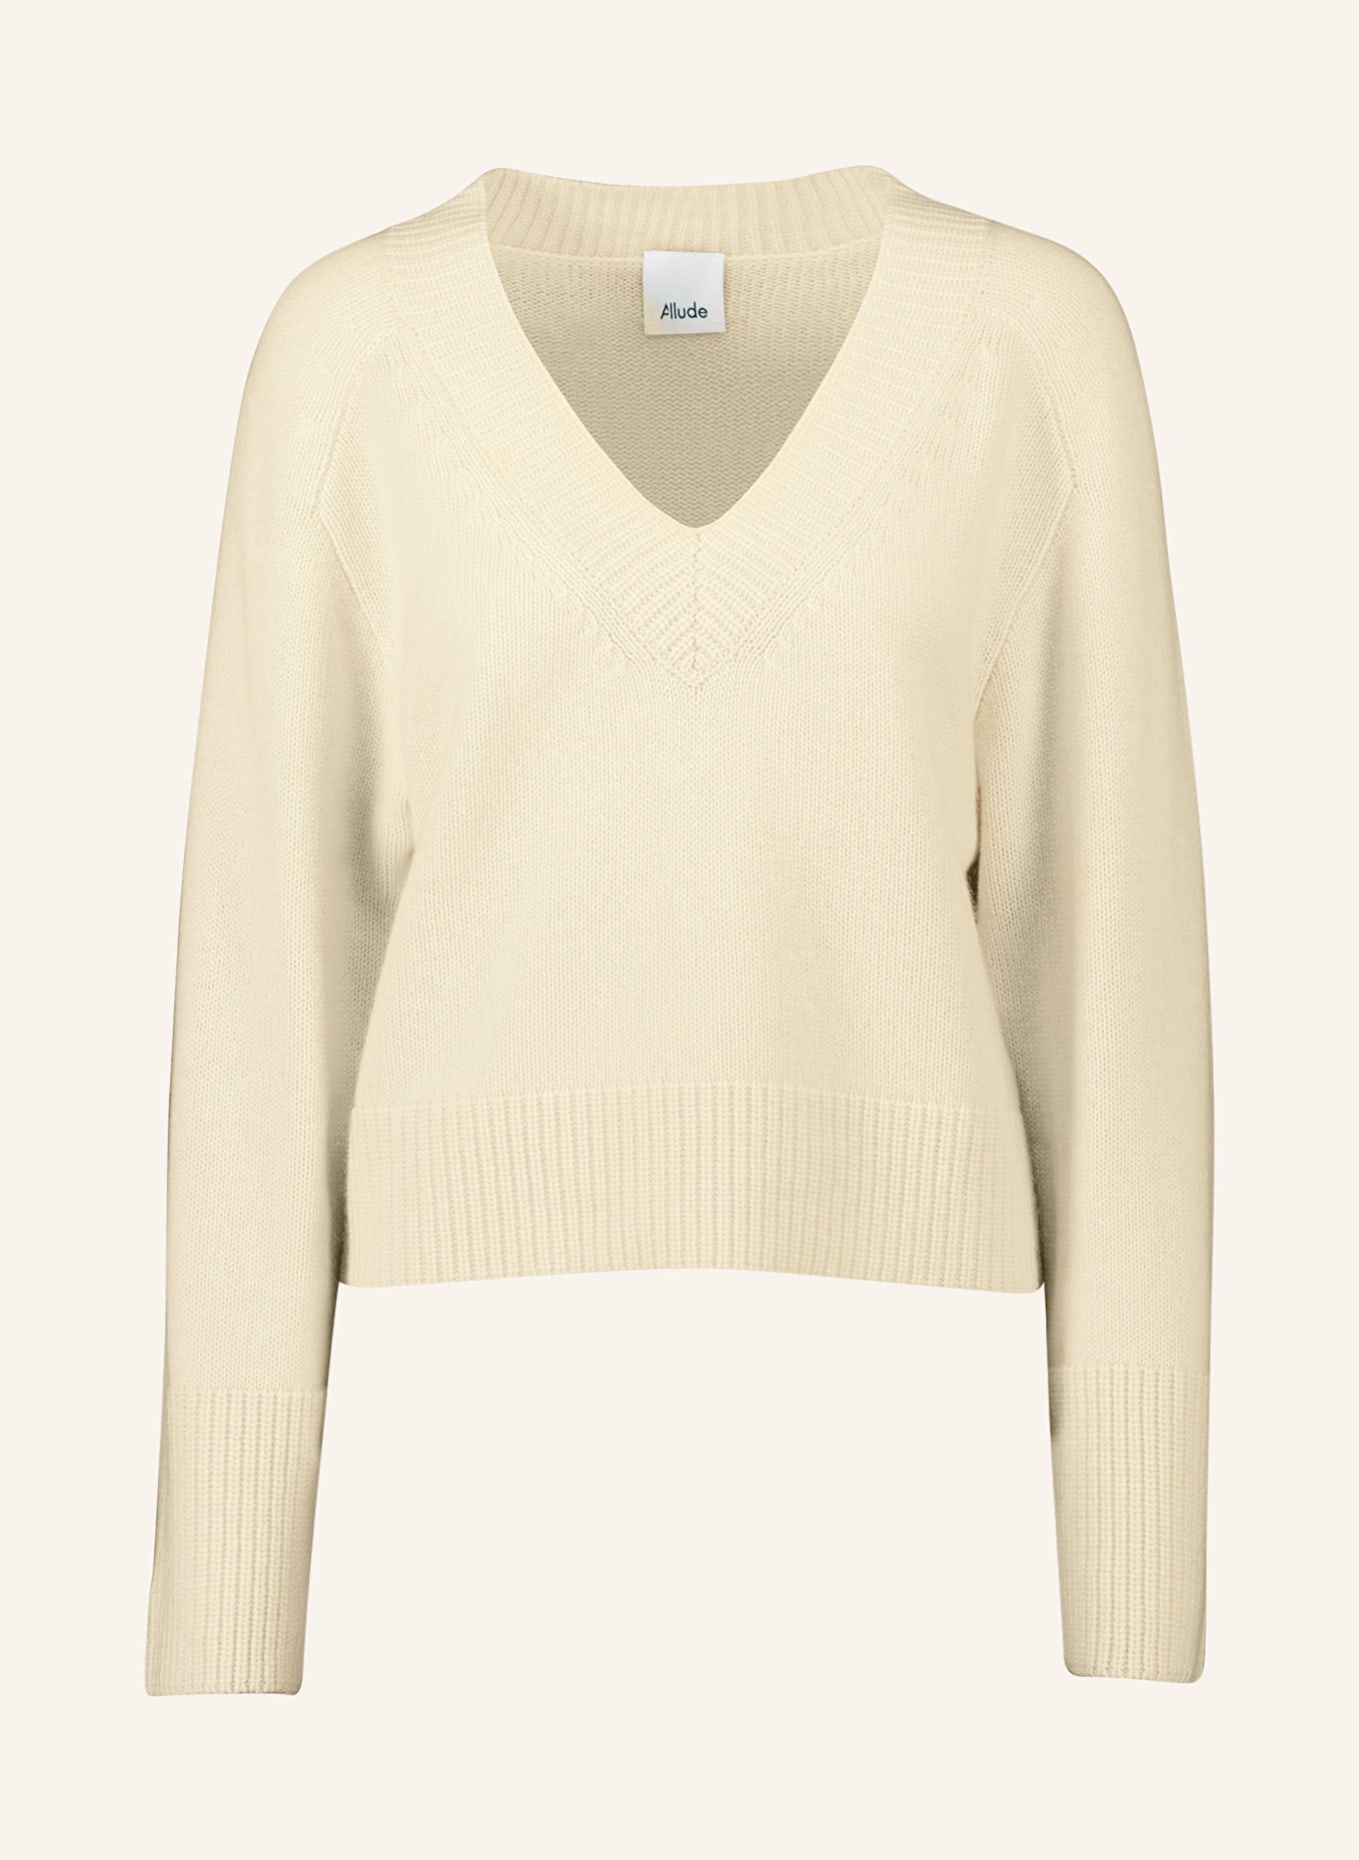 ALLUDE Cashmere sweater, Color: CREAM (Image 1)